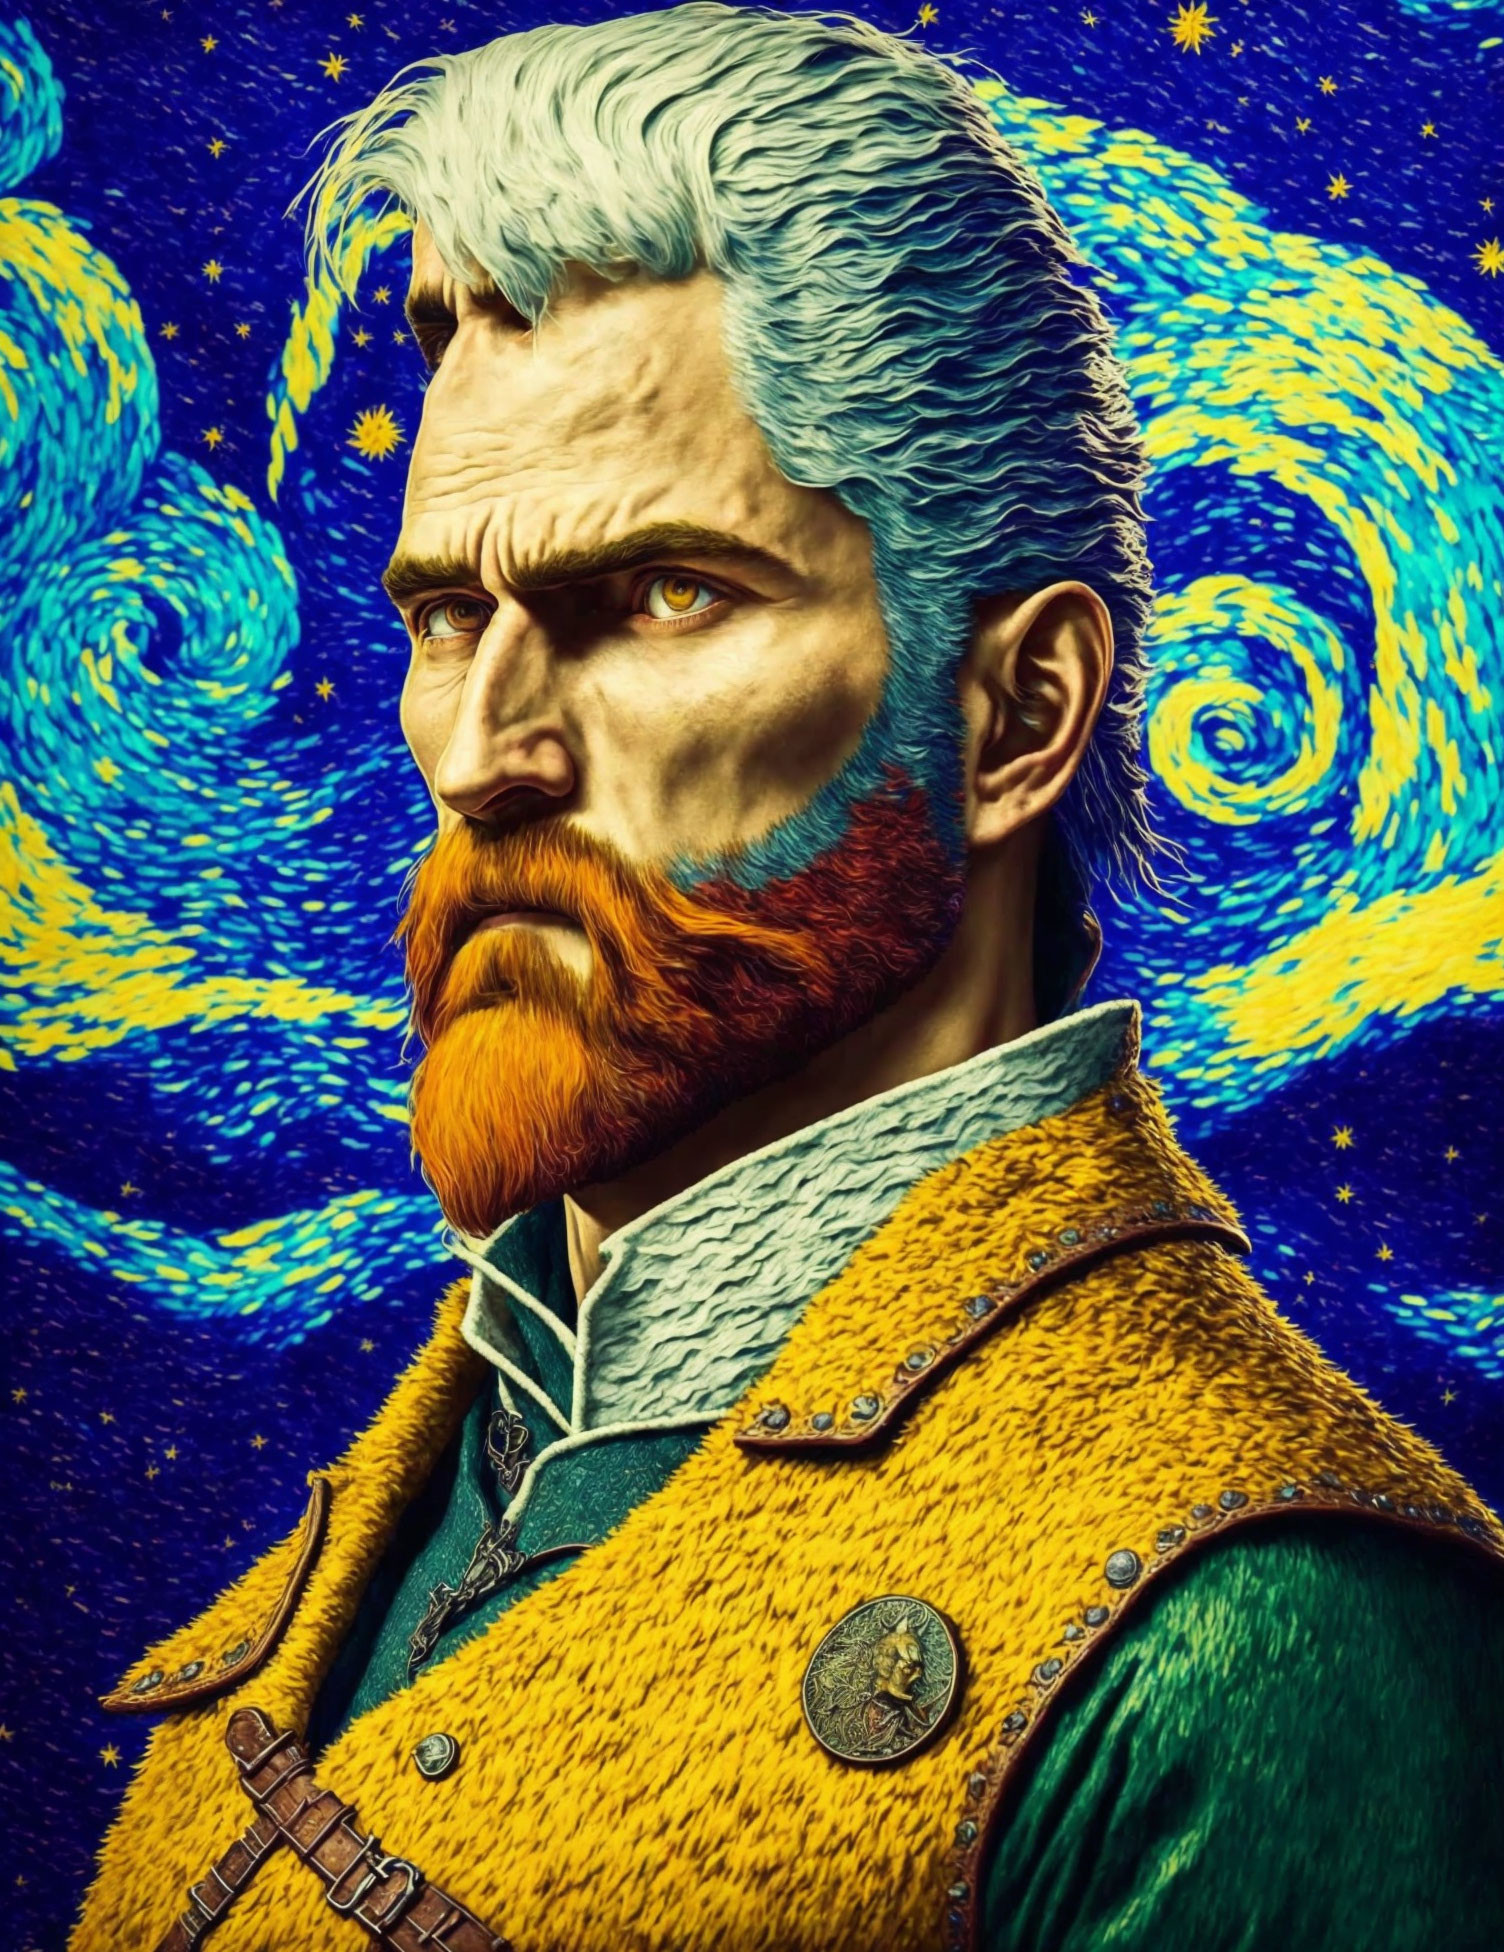 The Van Gogh Witcher 